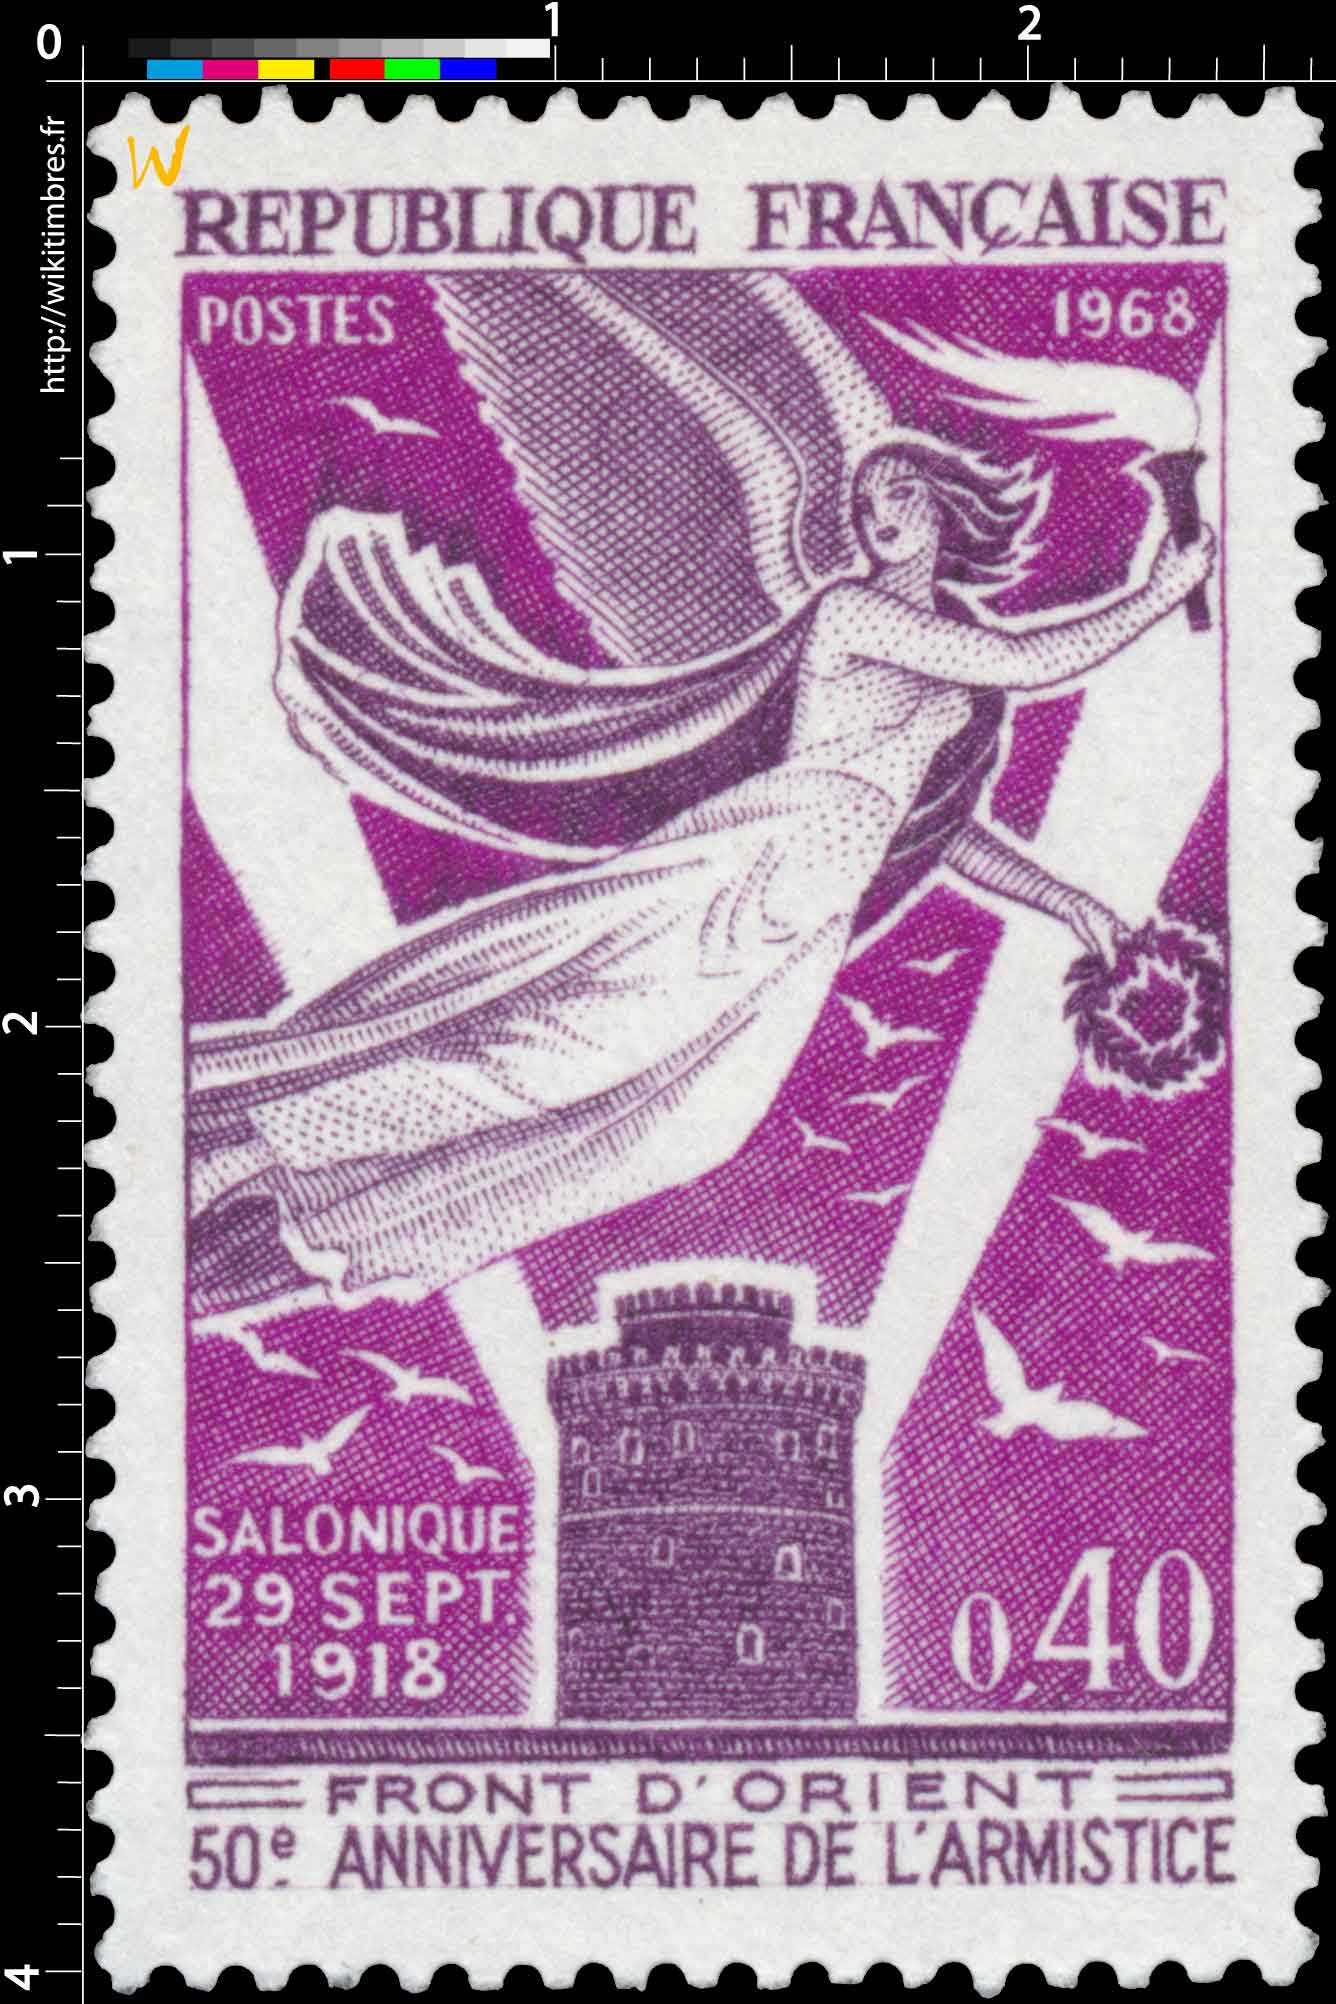 1968 SALONIQUE 29 SEPT 1918 FRONT D'ORIENT 50e ANNIVERSAIRE DE L'ARMISTICE